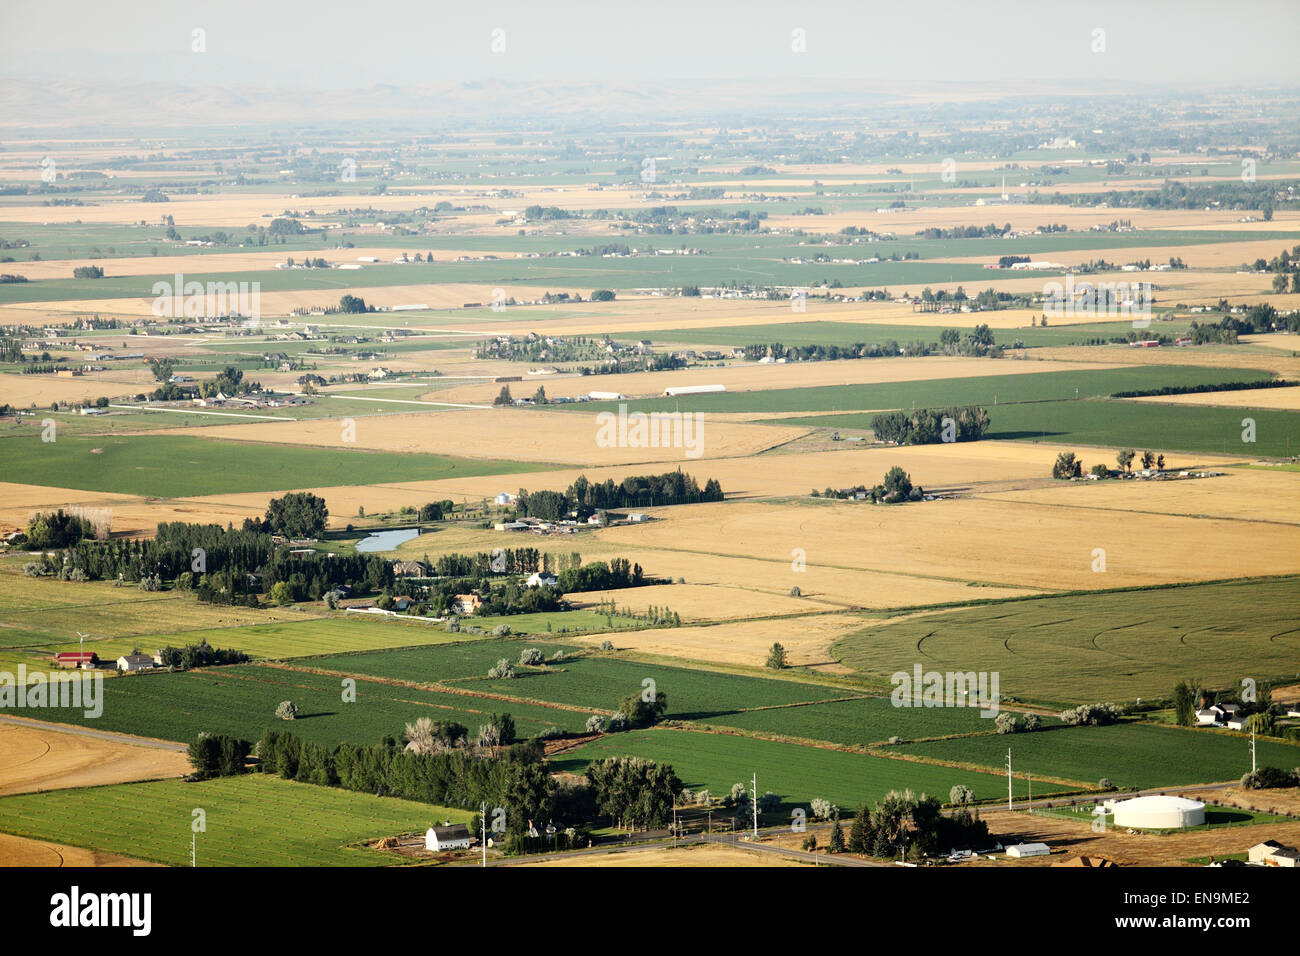 Une vue aérienne des terres agricoles avec des canaux d'irrigation, d'inondation, et les sprinkleurs pivot d'arrosage des champs. Banque D'Images